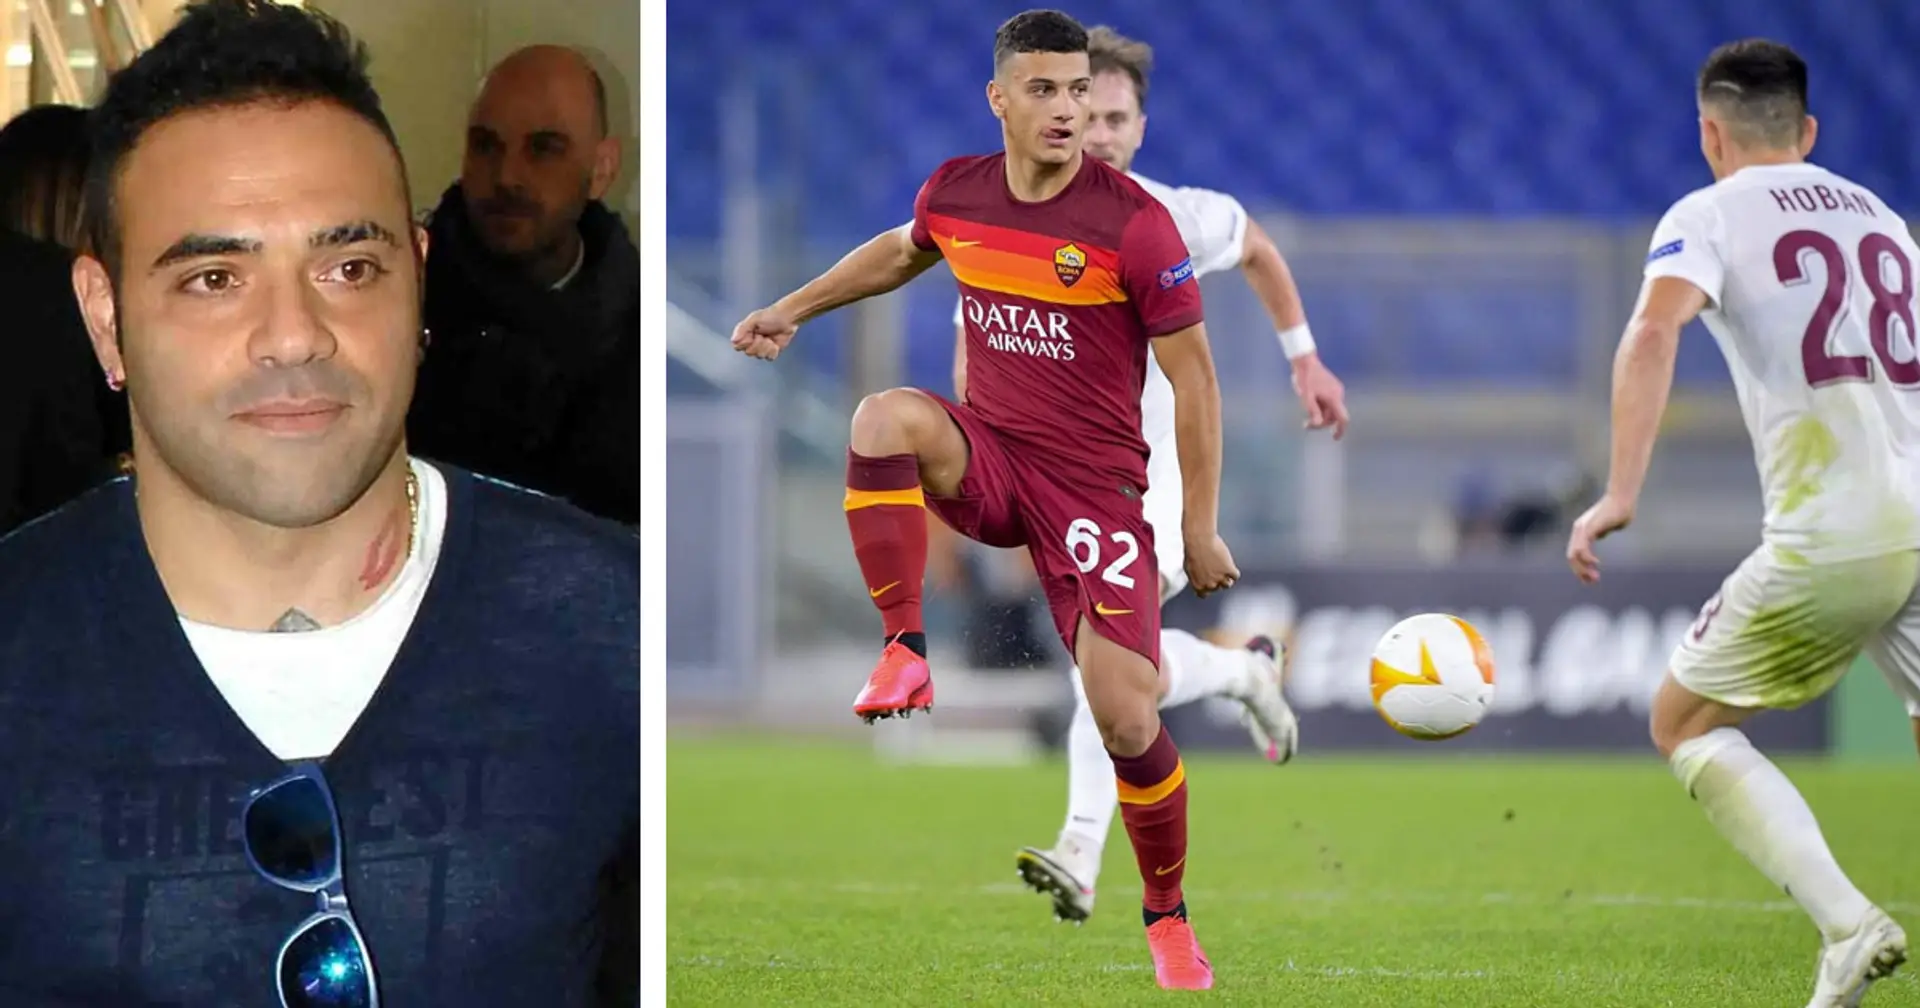 "A vederlo in campo mi sono emozionato, ricorda un po' Calhanoglu": Miccoli elogia Milanese, cresciuto nella sua scuola calcio